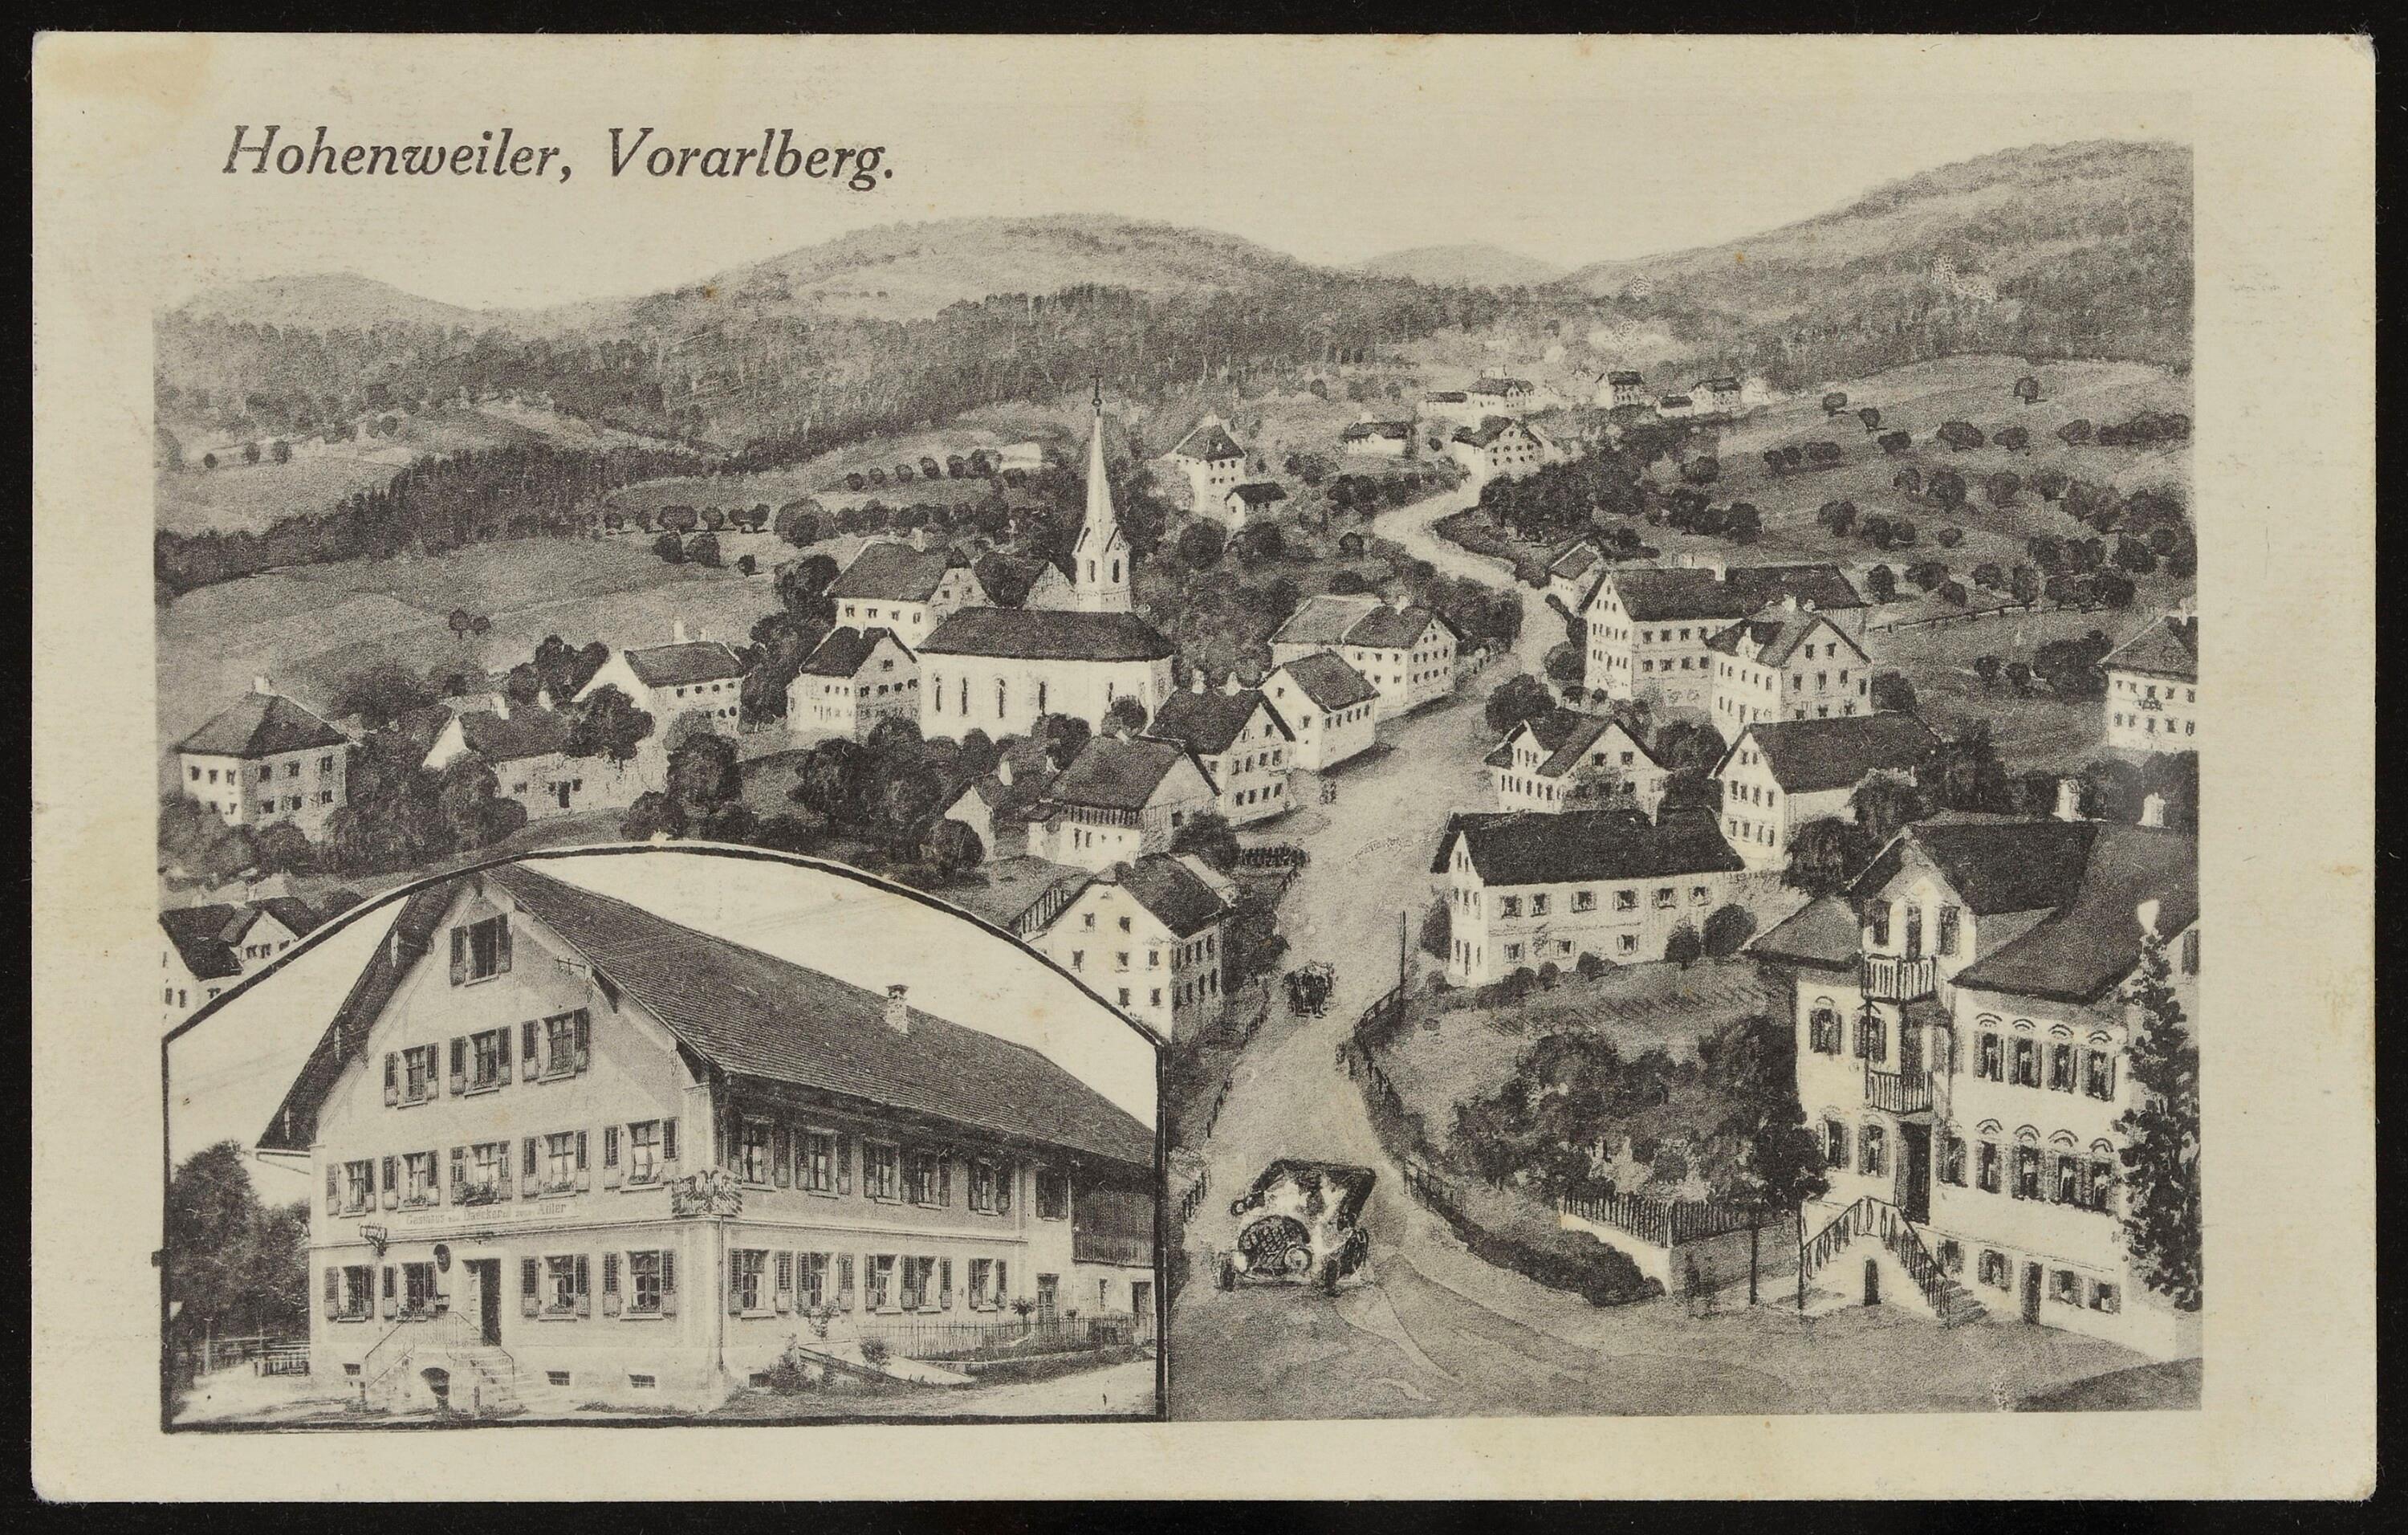 Hohenweiler, Vorarlberg></div>


    <hr>
    <div class=